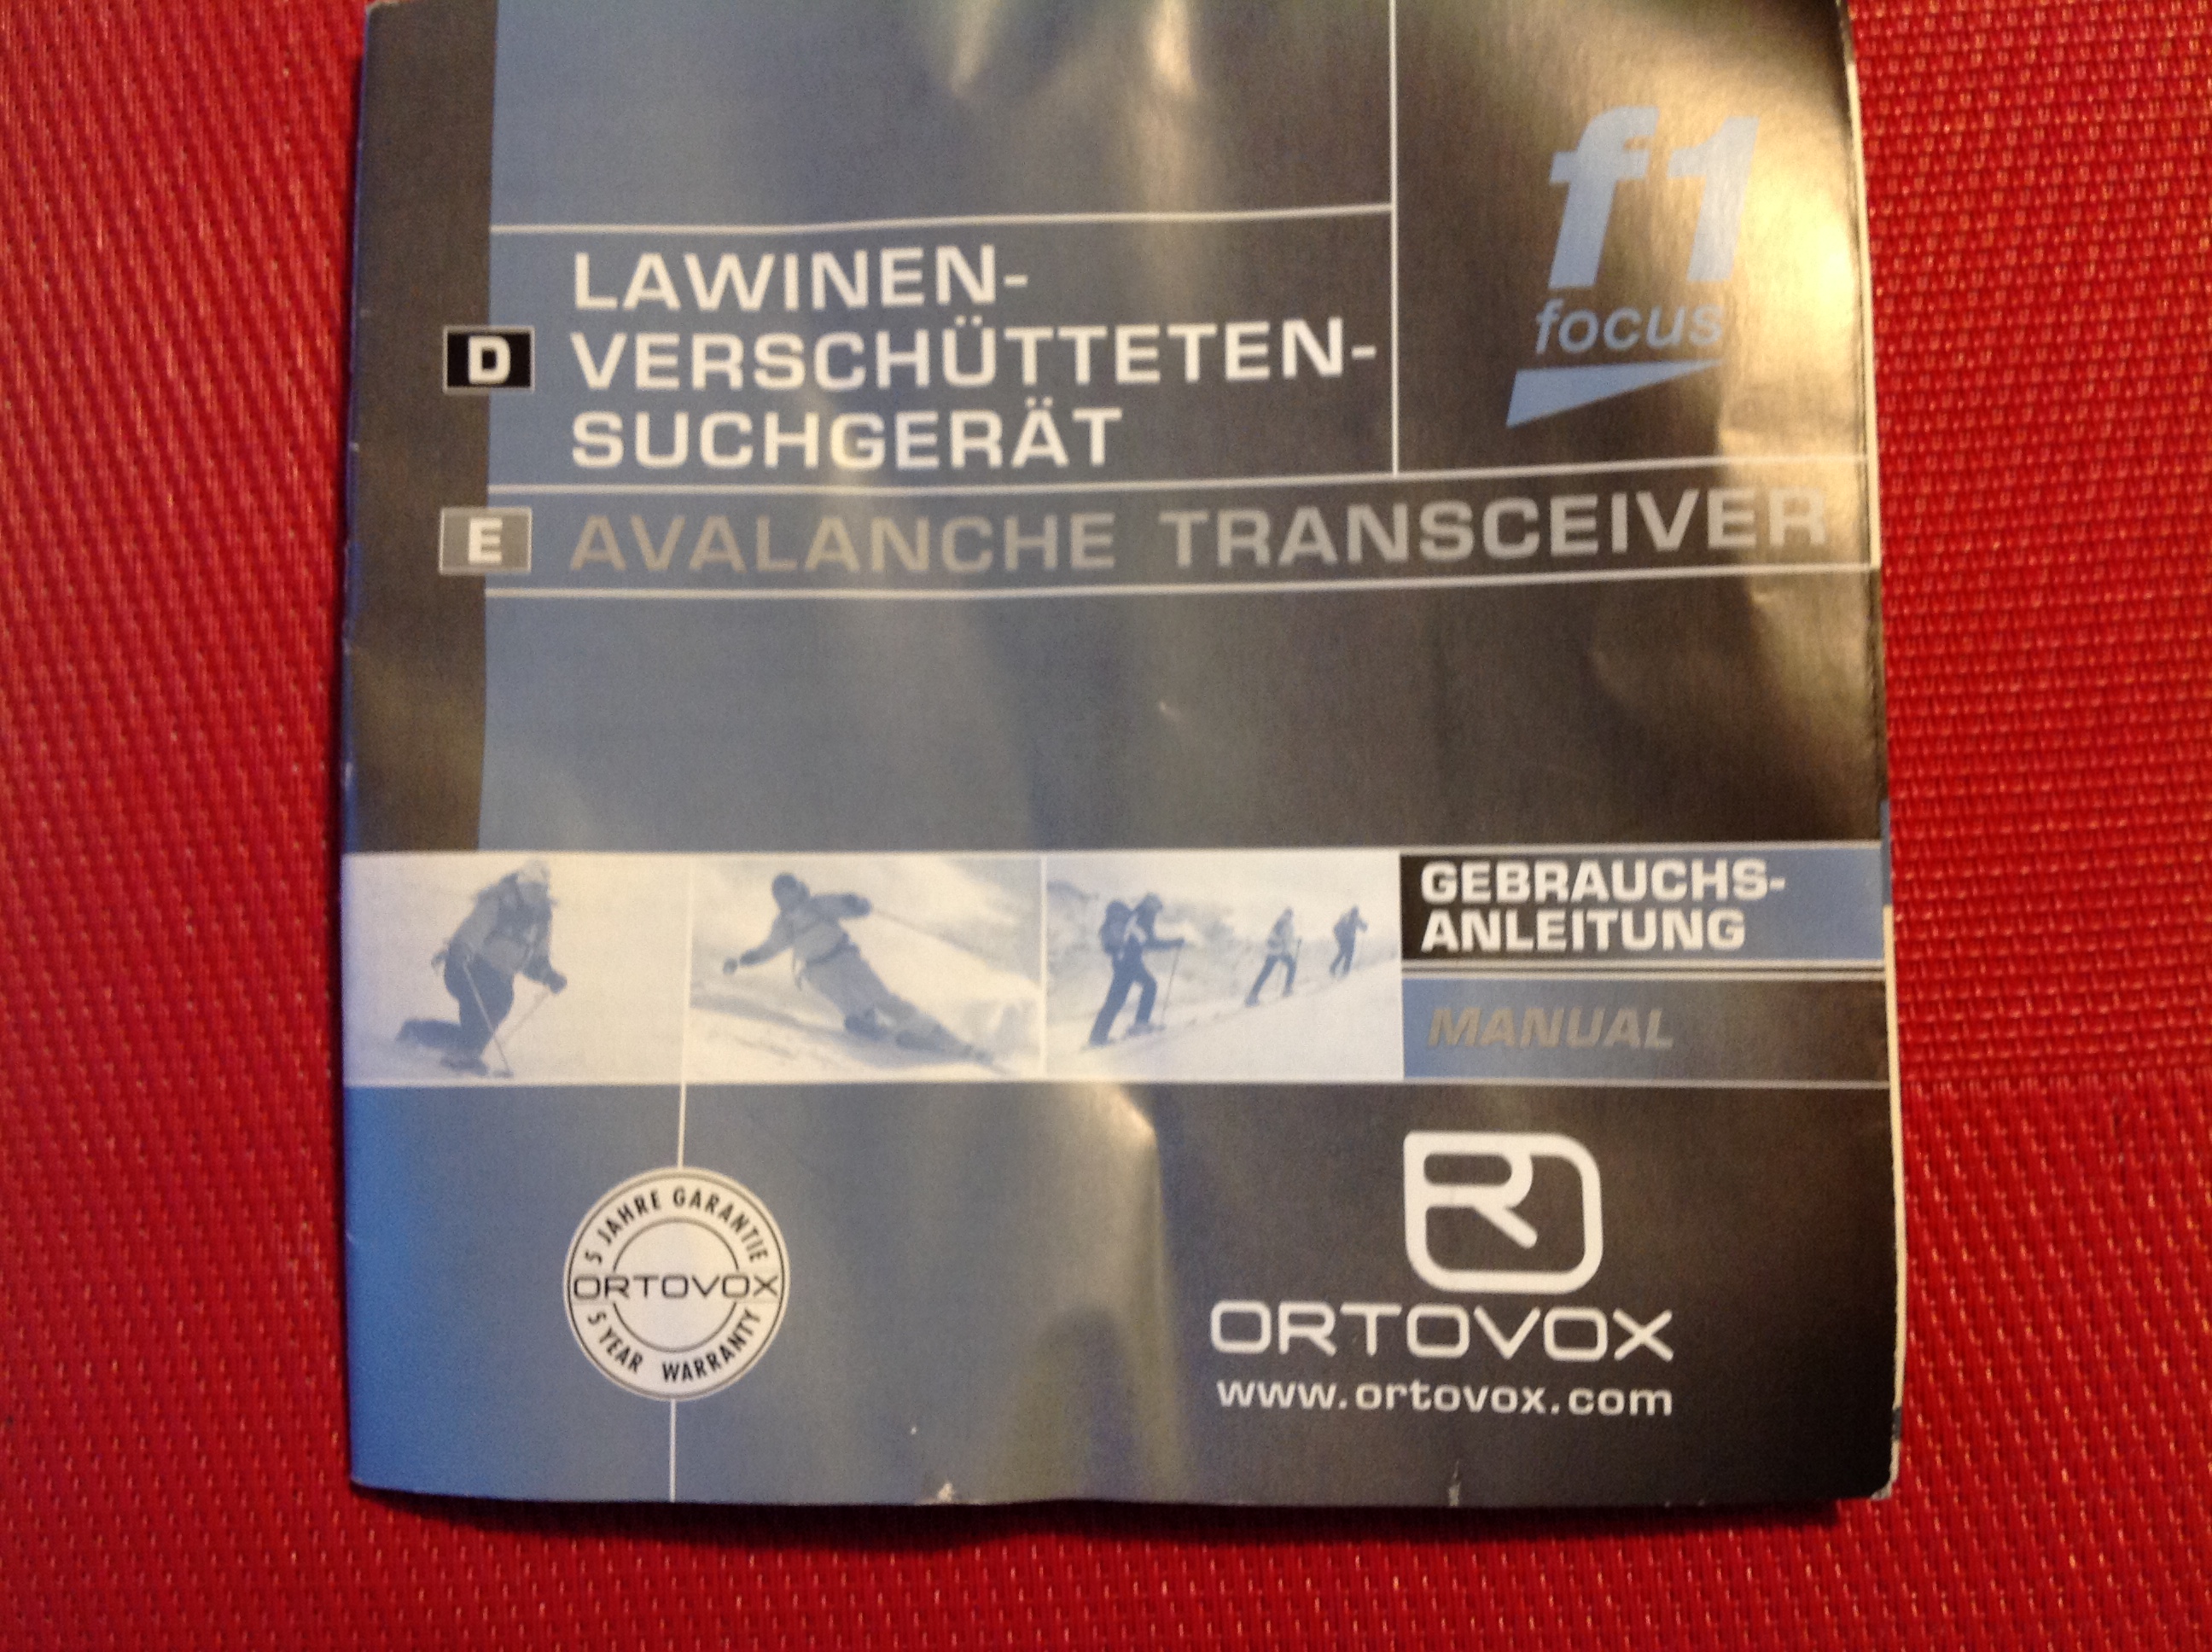 Lawinen-Verschütteten-Suchgerät Ortovox F1 Focus